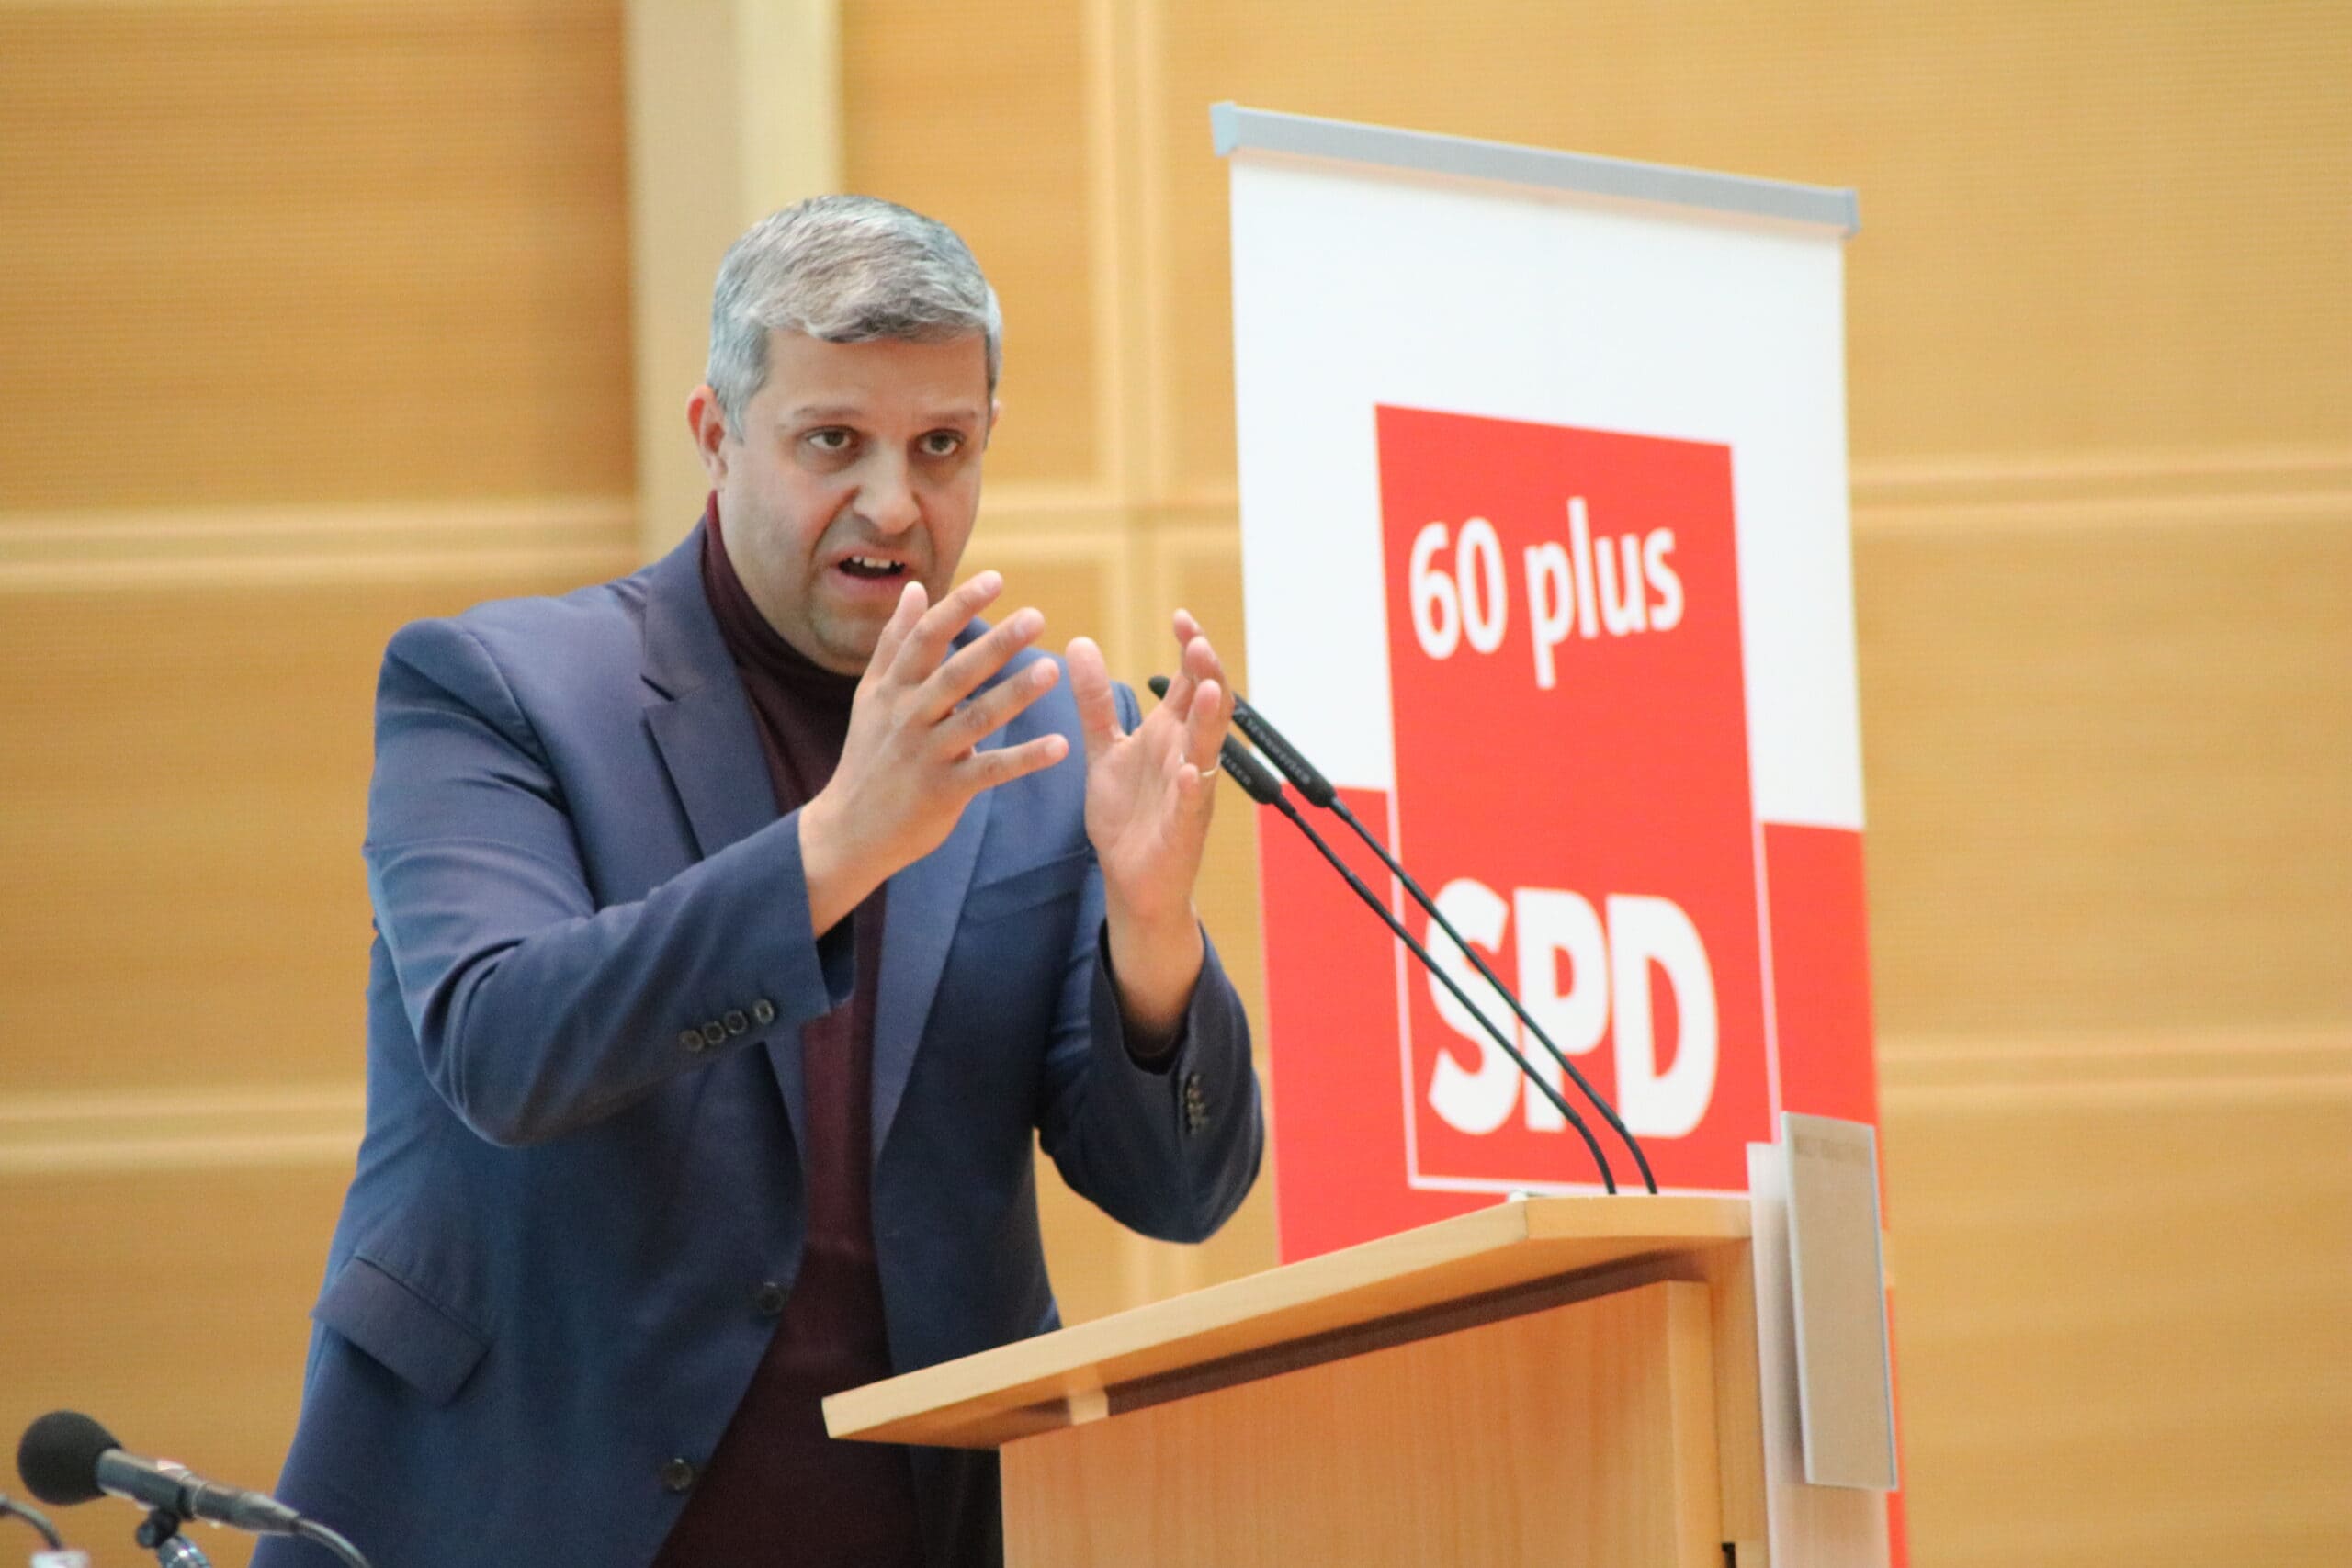 Arbeitsgemeinschaft SPD 60plus 5